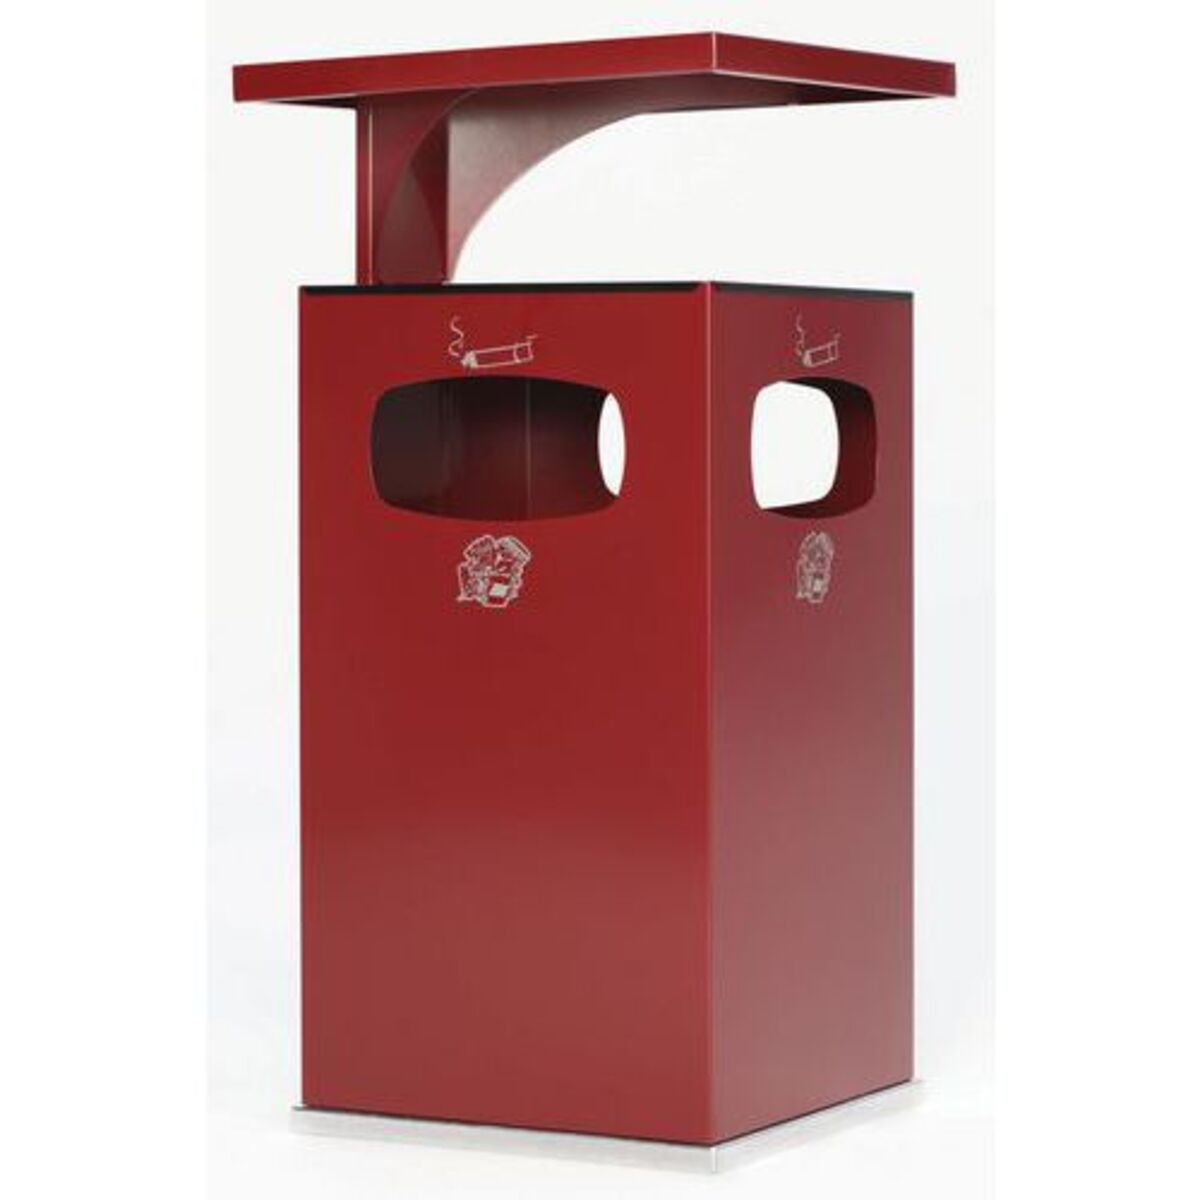 Cendrier-poubelle 72L / Rouge bordeaux - Manutan